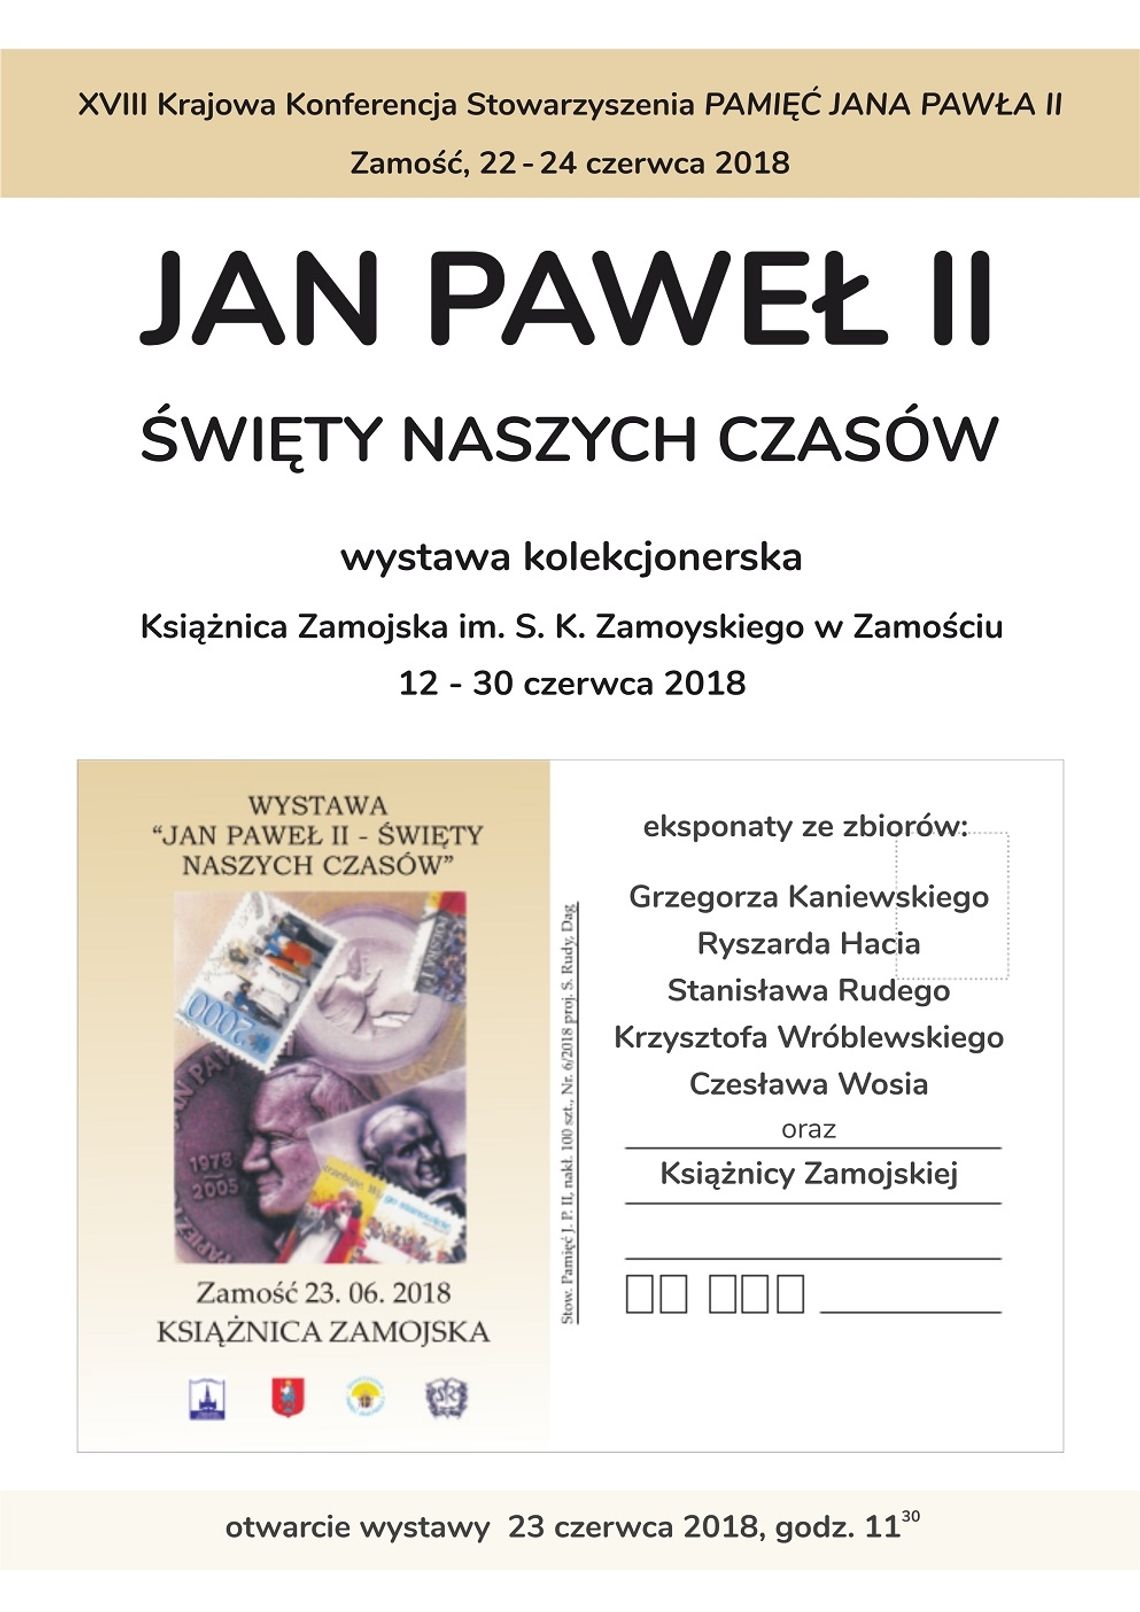 JAN PAWEŁ II - ŚWIĘTY NASZYCH CZASÓW - wystawa kolekcjonerska